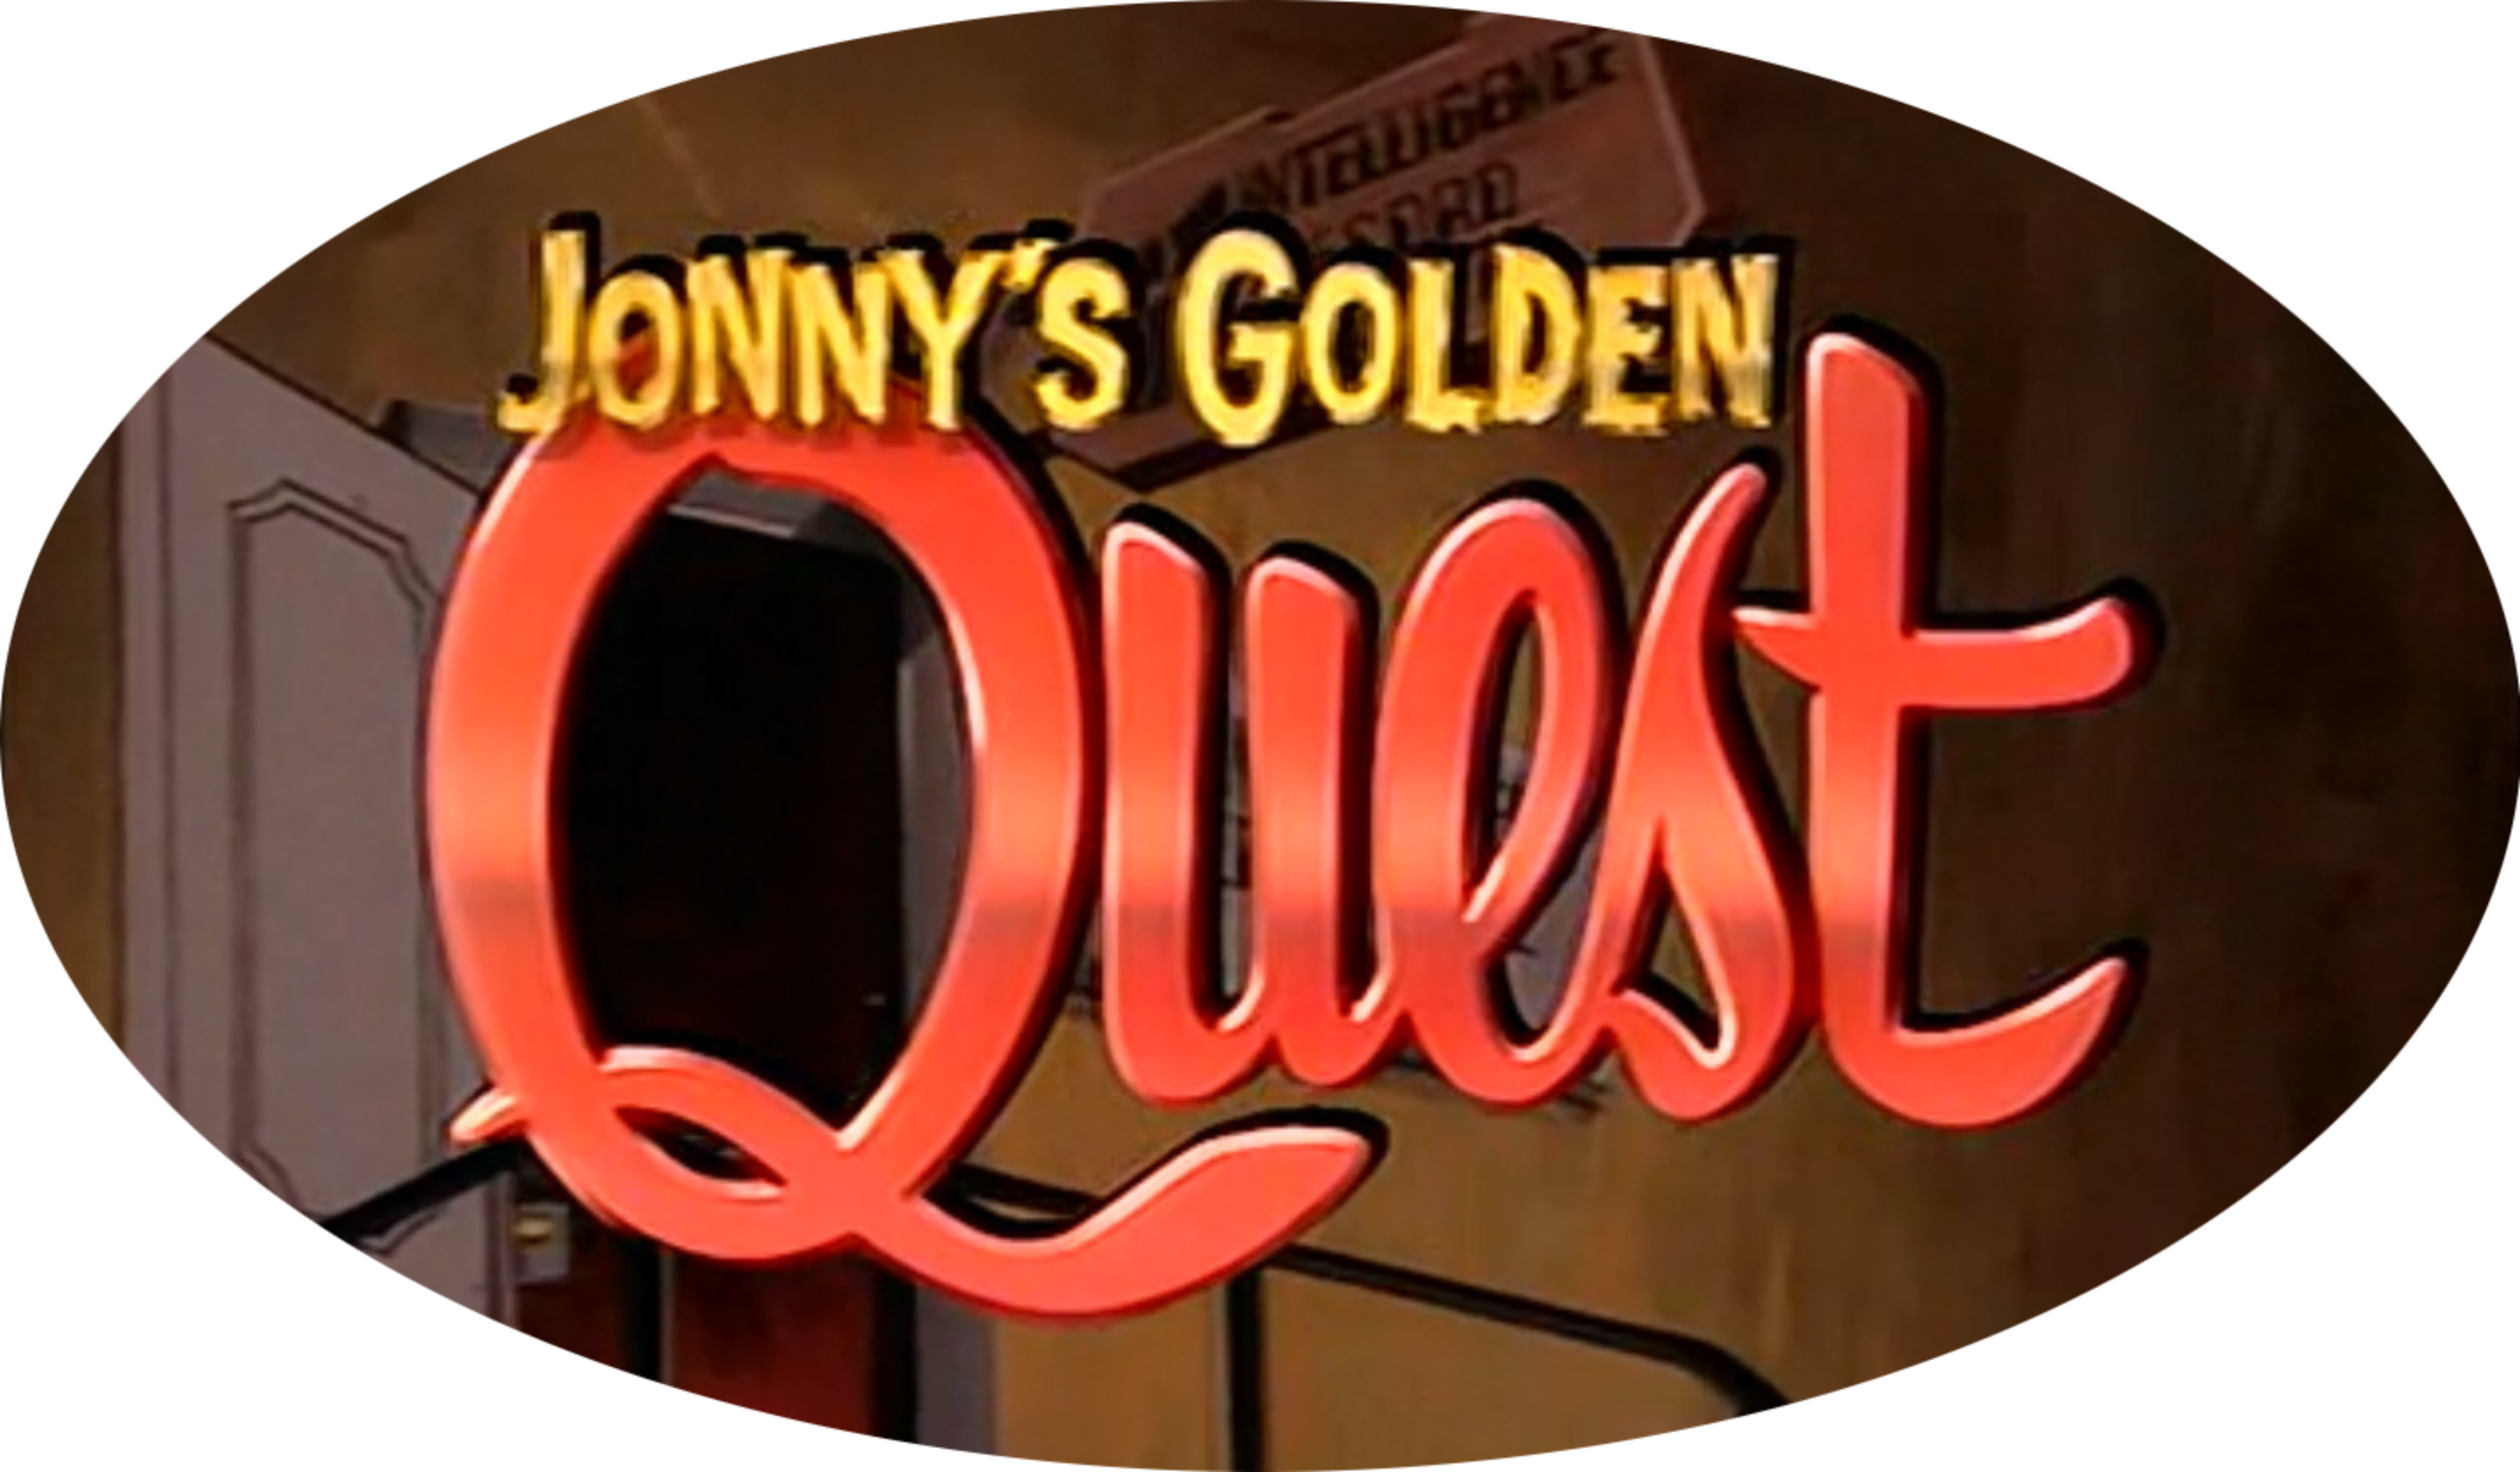 Jonny's Golden Quest (1 DVD Box Set)